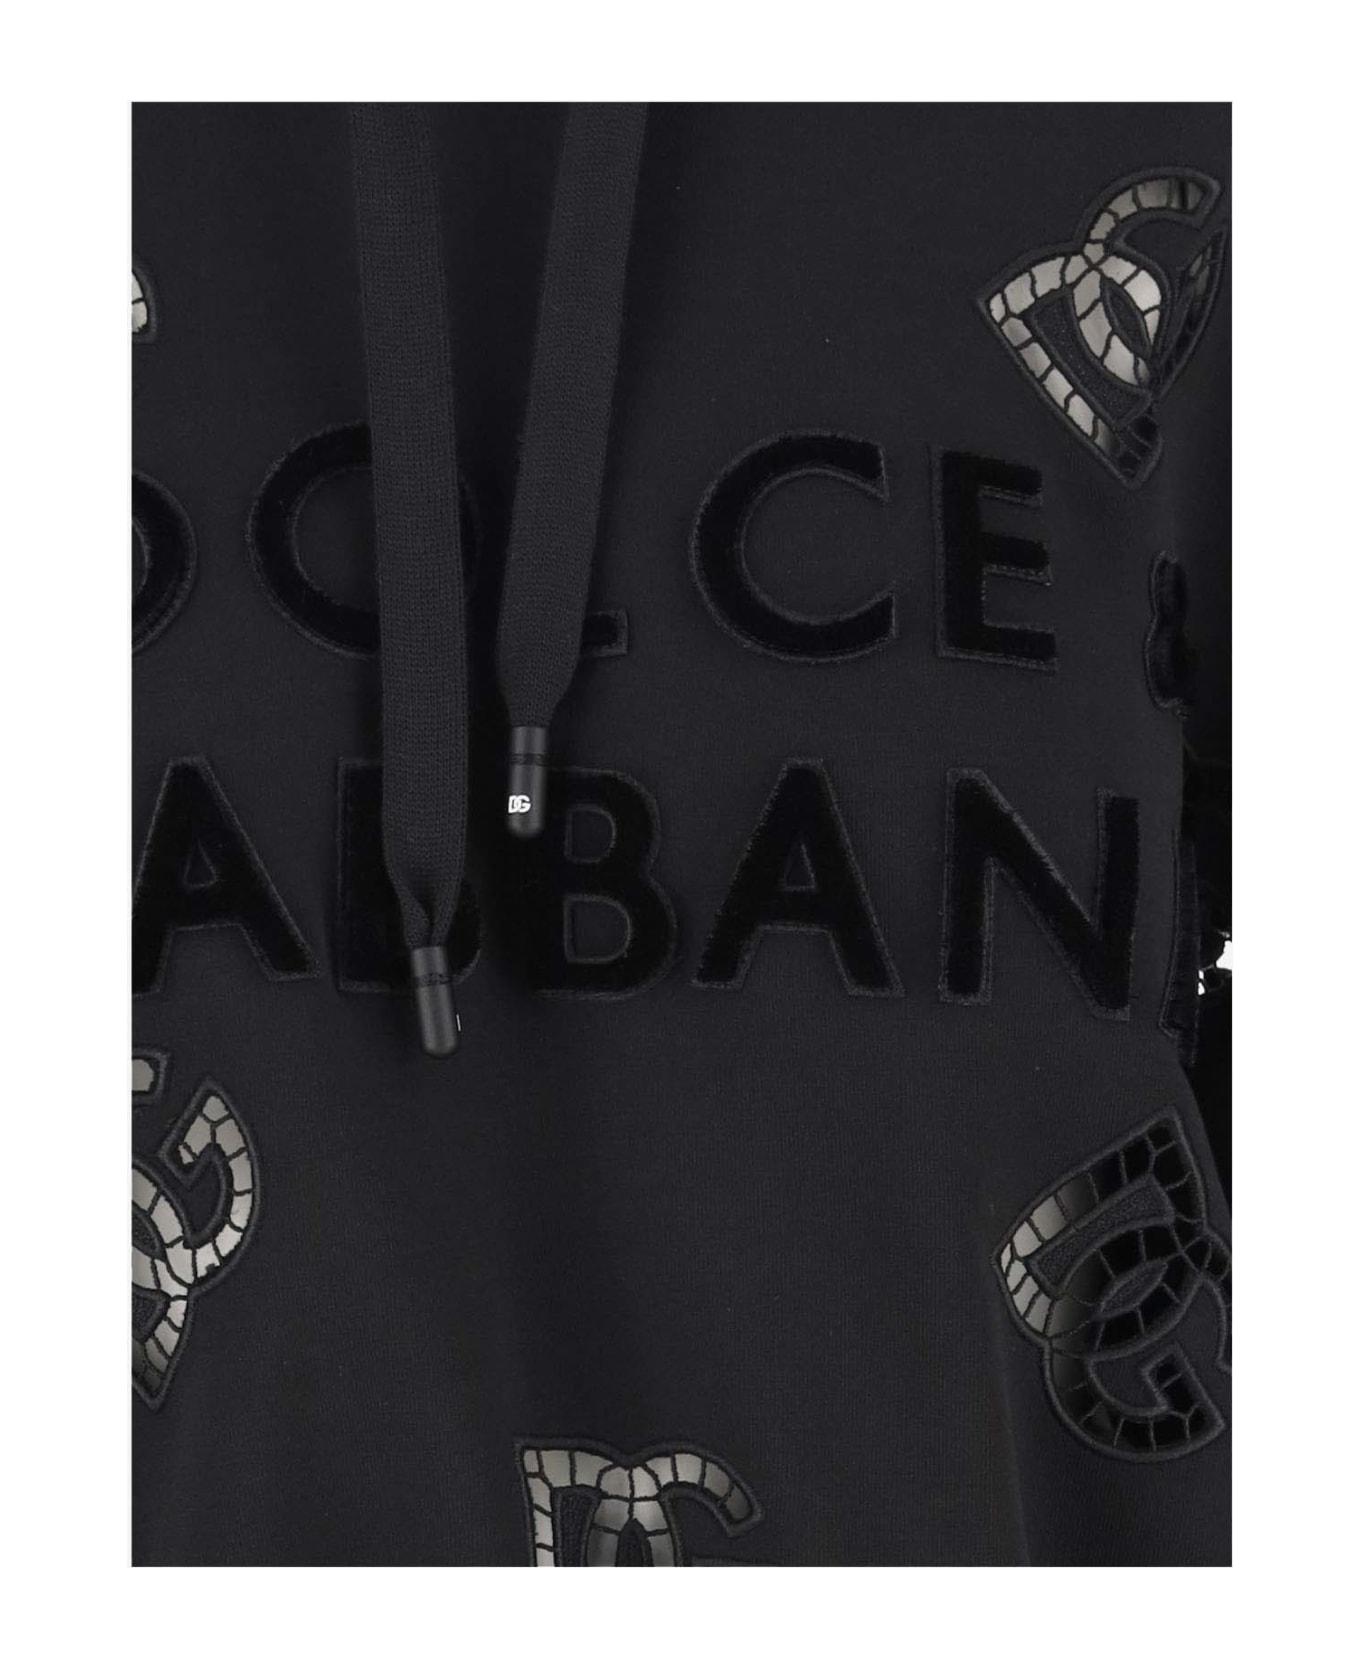 Dolce & Gabbana Logo Cotton Blend Crop Hoodie - Black